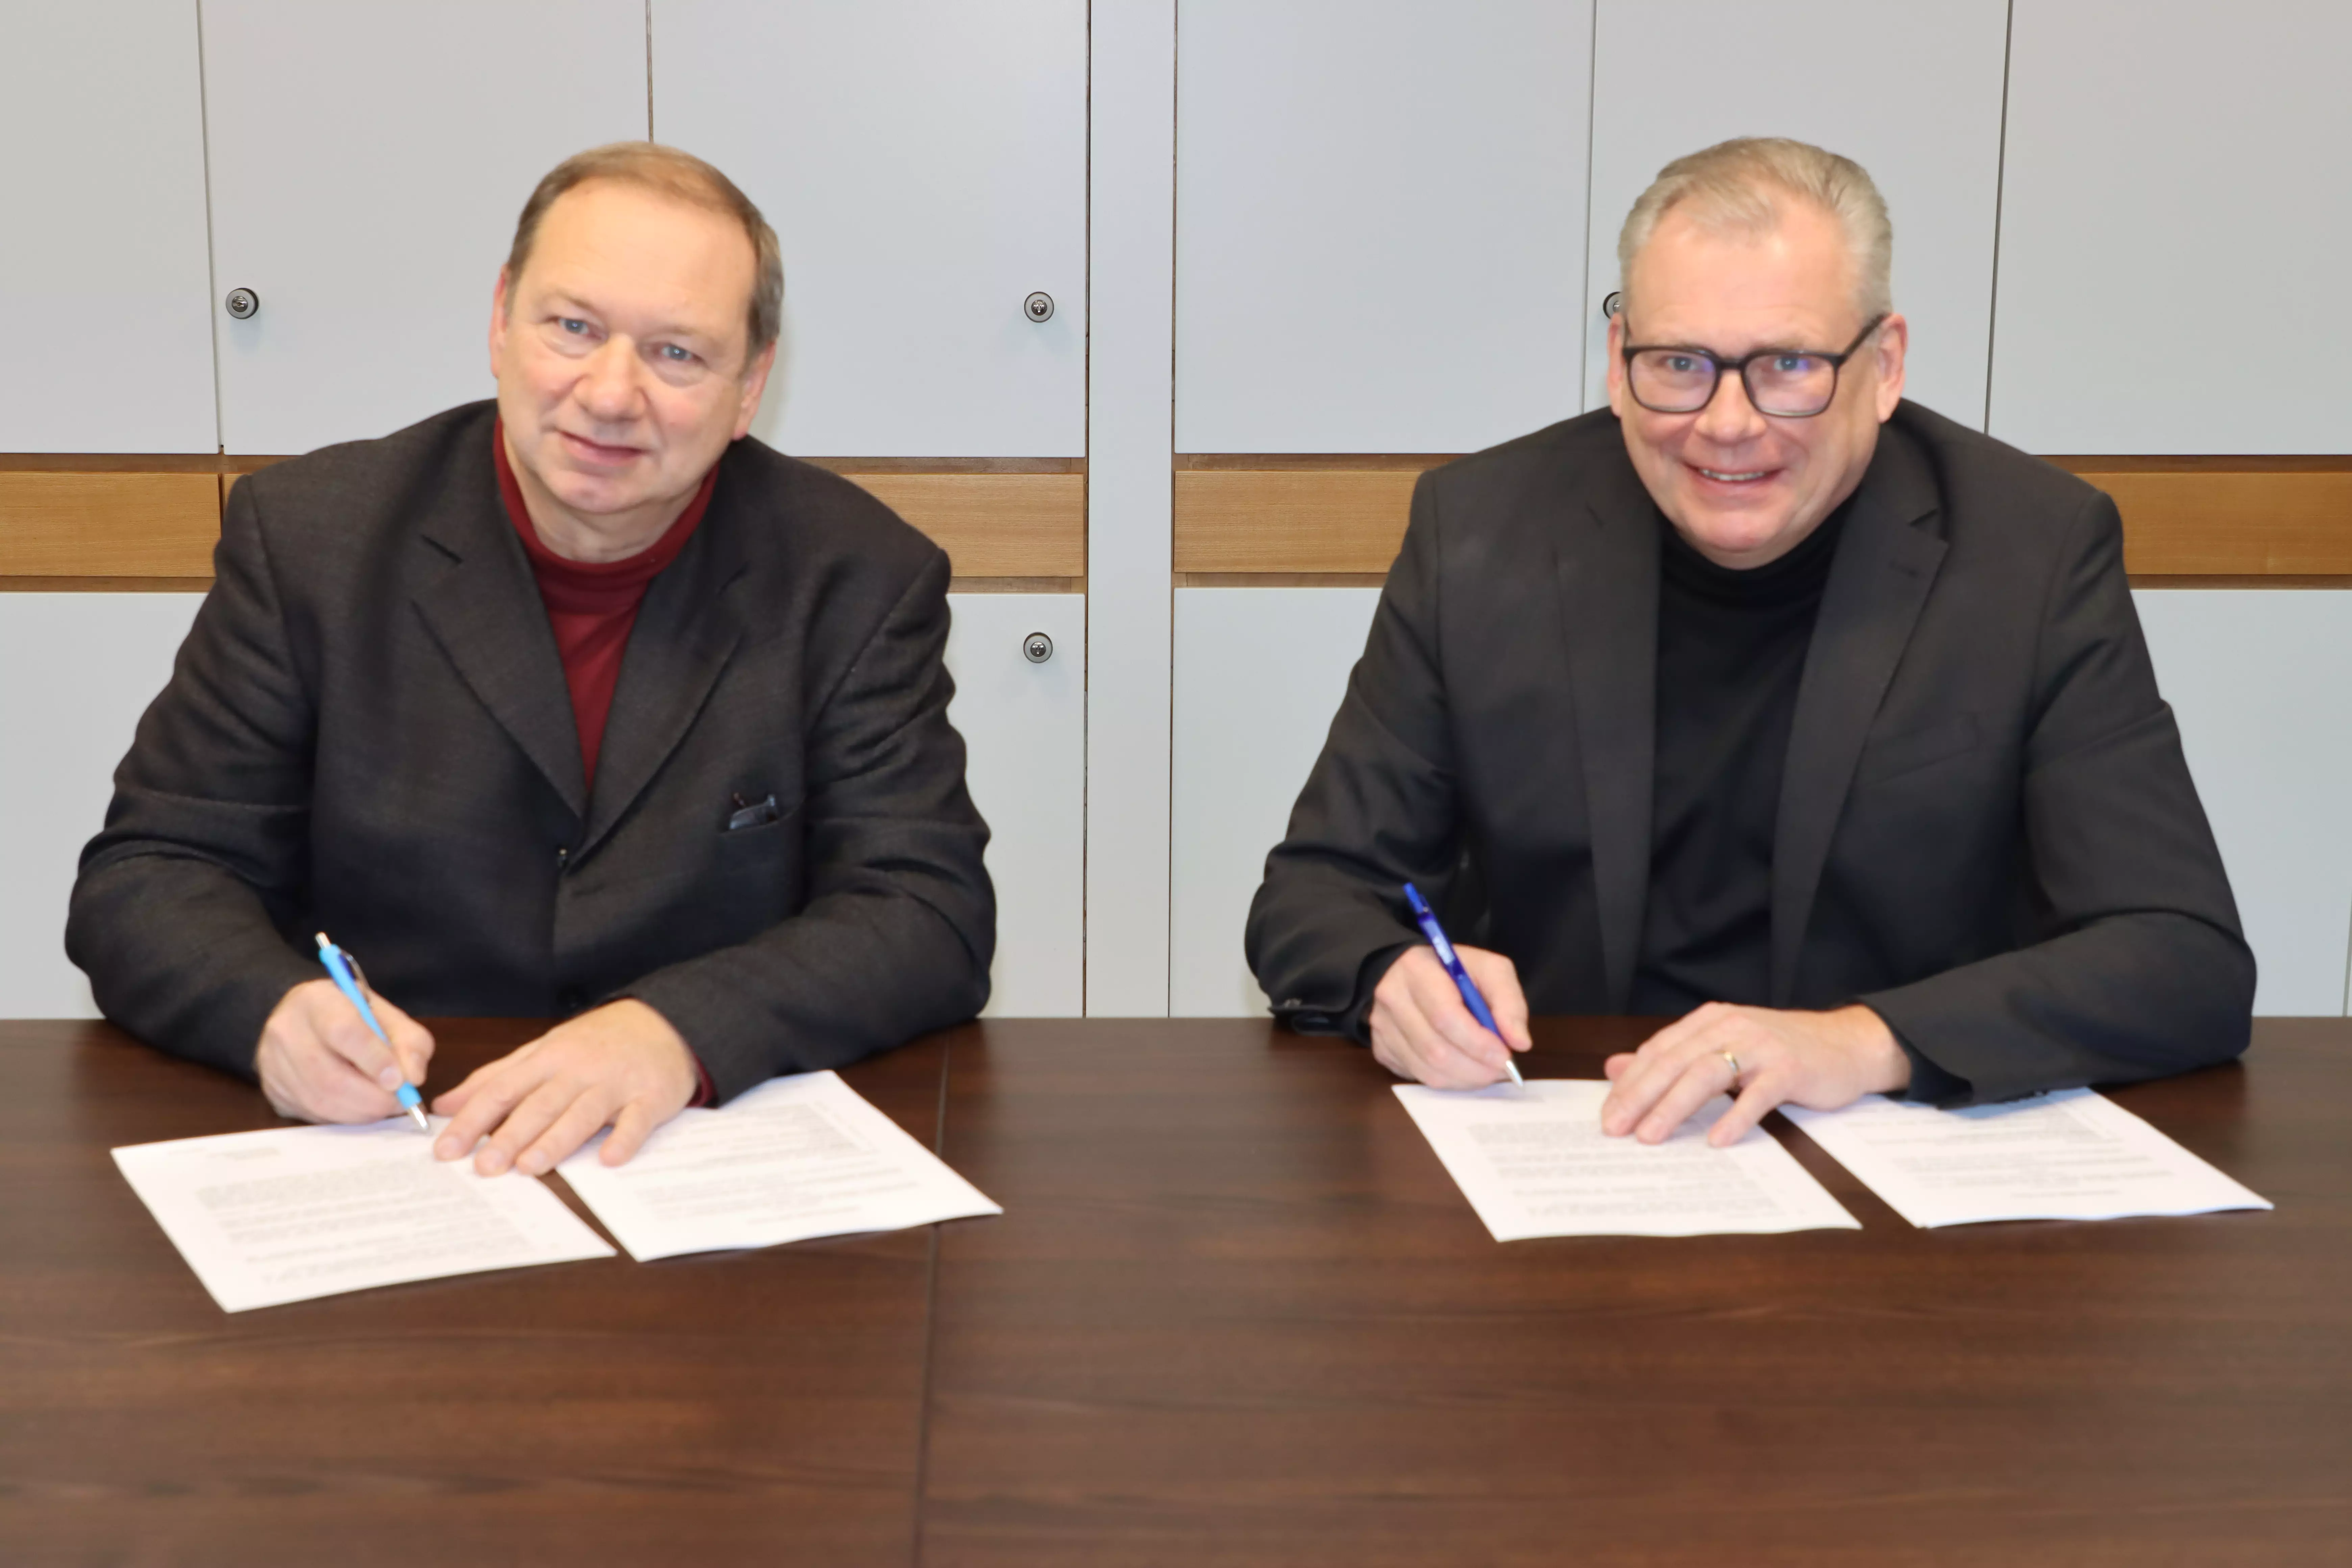 Pfarrer Heinrich Hoffamnn und Bürgermeister Bernhard Richter unterschreiben den Überleitungsvertrag - damit wird wird die seitherige Diakoniestation in die Sozialstation überführt